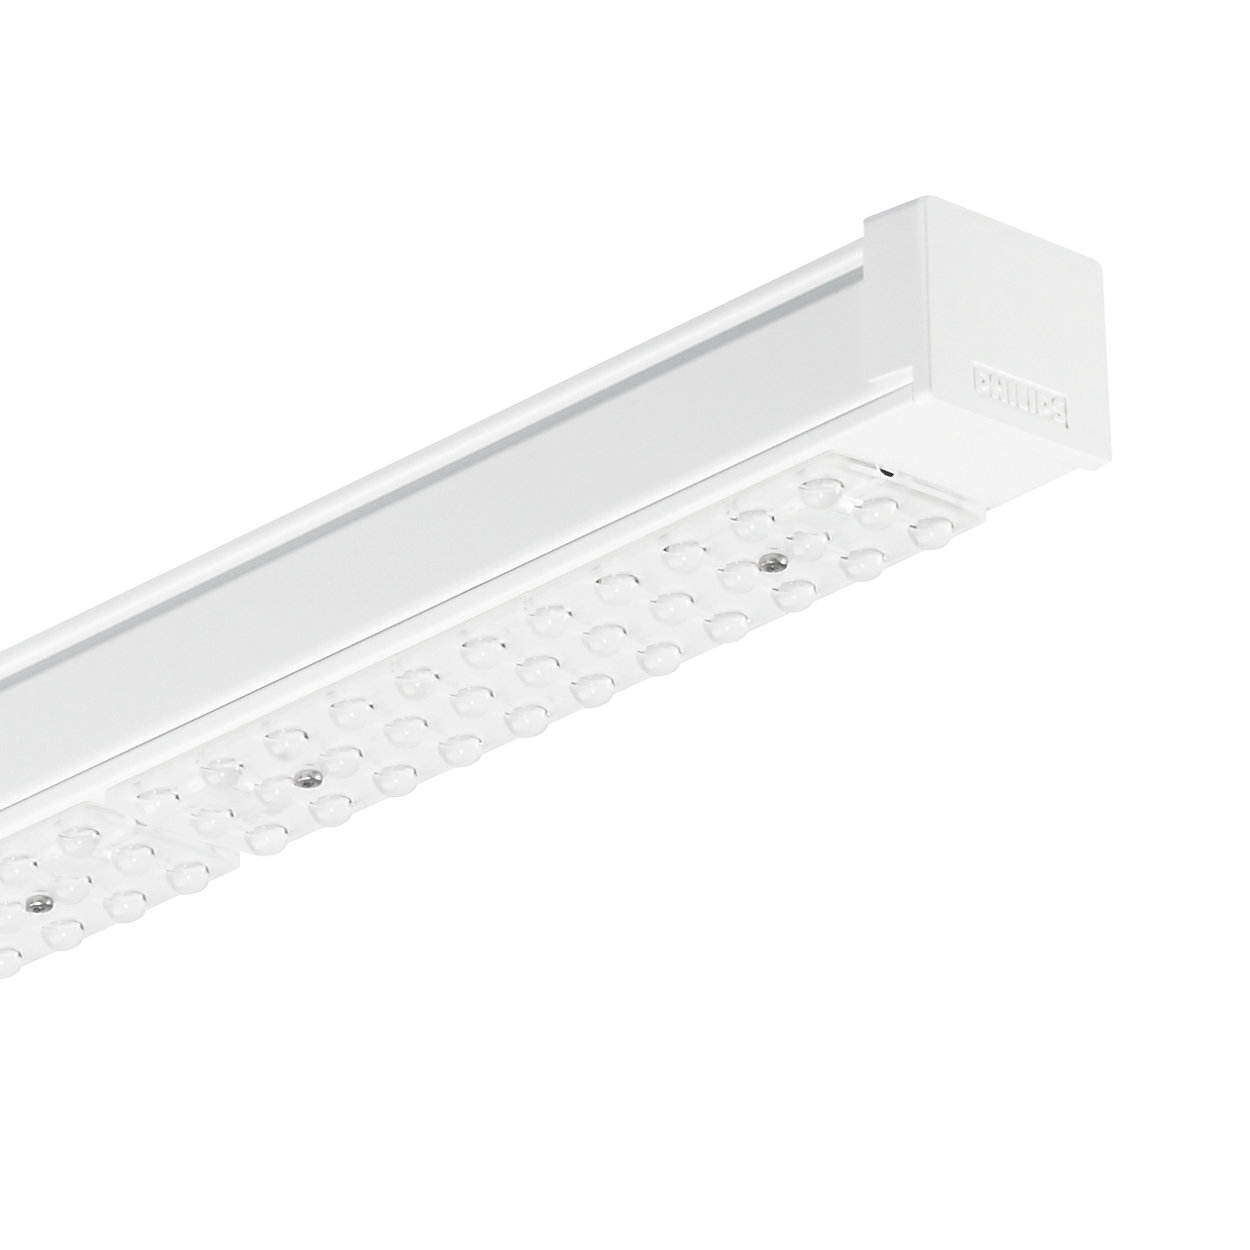 Wkładki Maxos LED dla linii świetlnych TTX400 — najwyższa sprawność i szybki zwrot z inwestycji